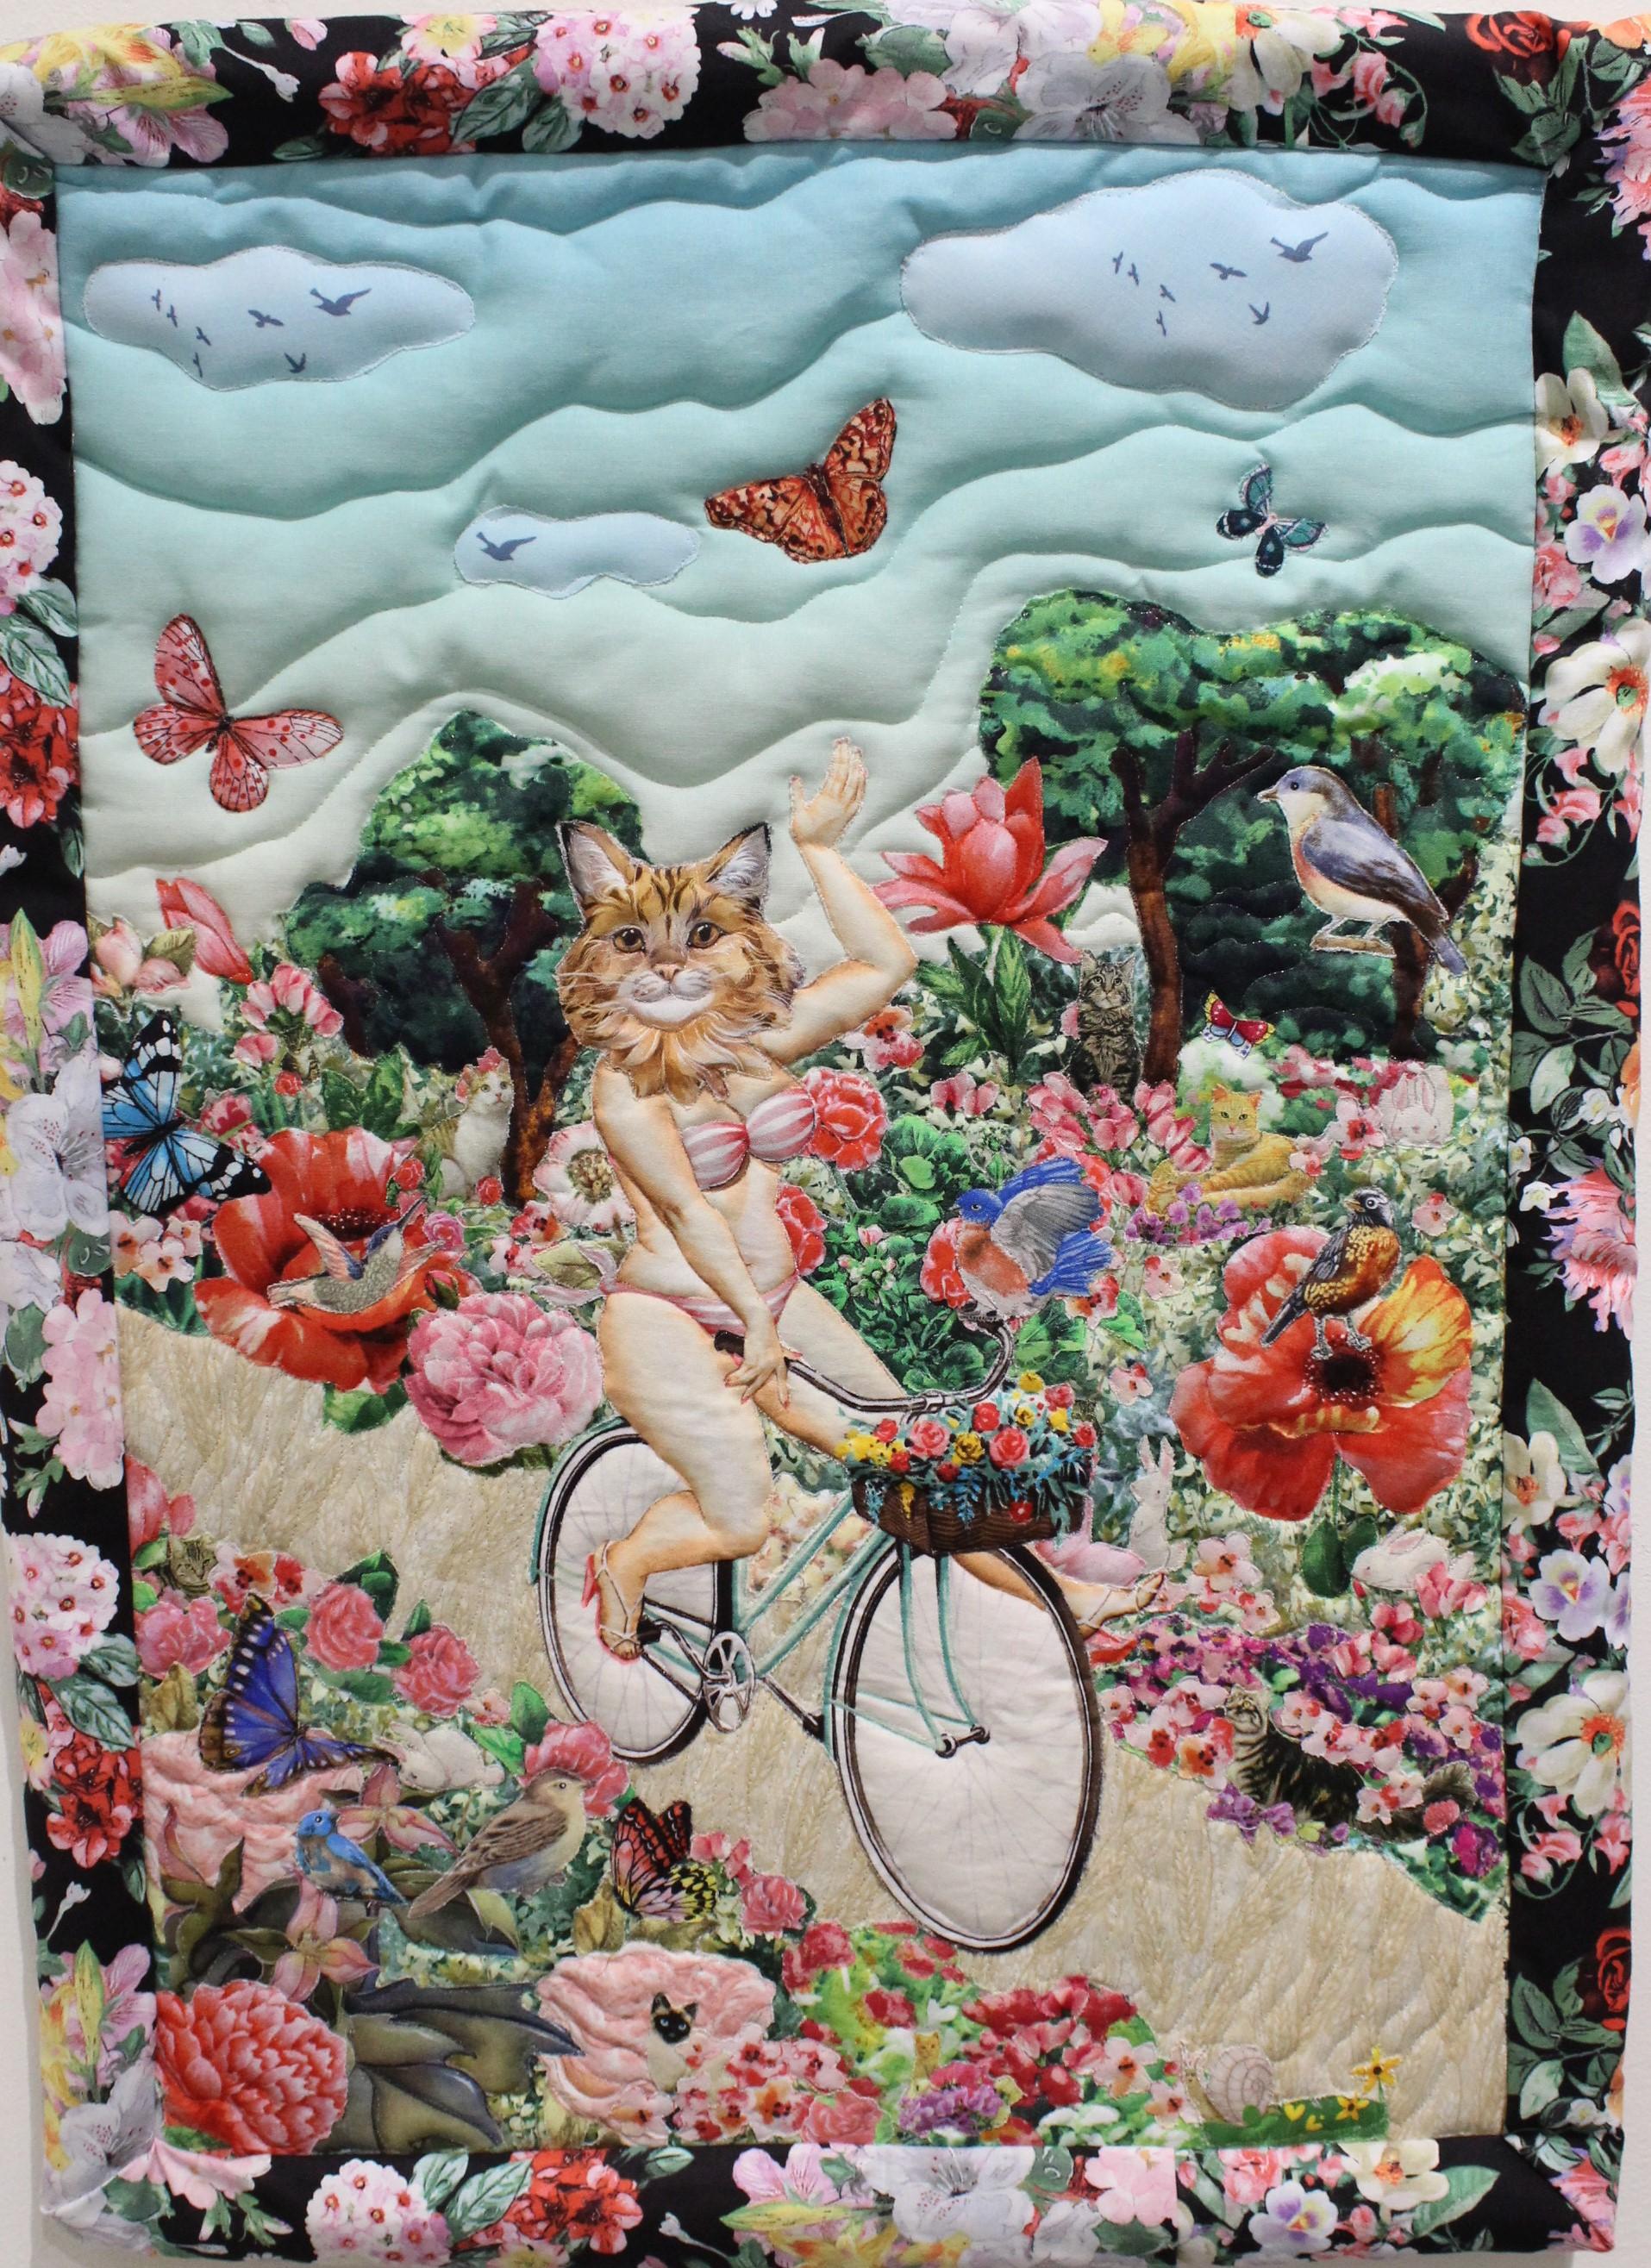 Cyclist Catgirlfriend - Art by Jane Tardo